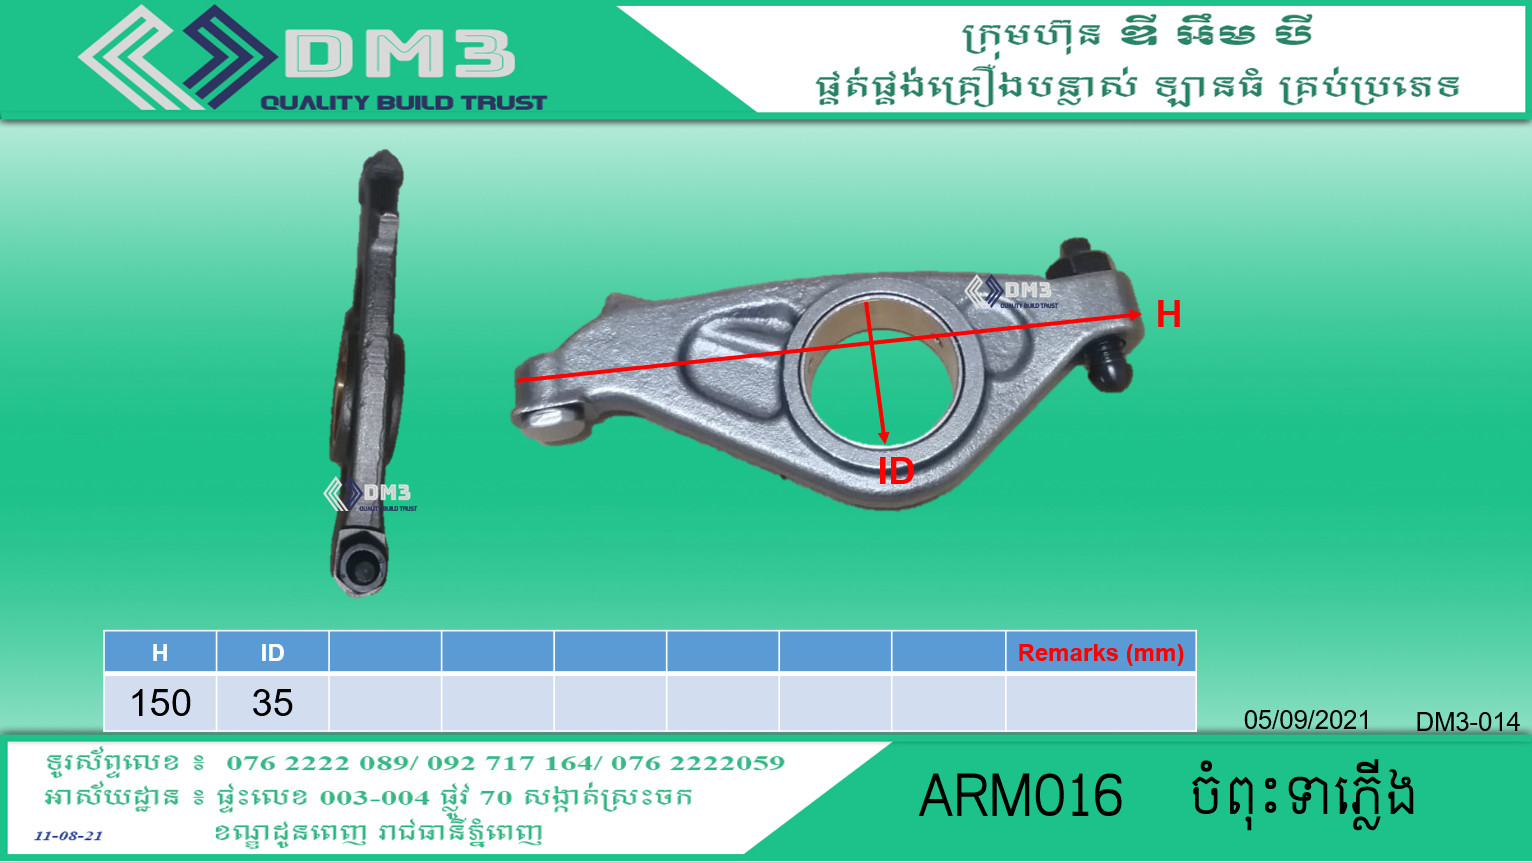 ARM016